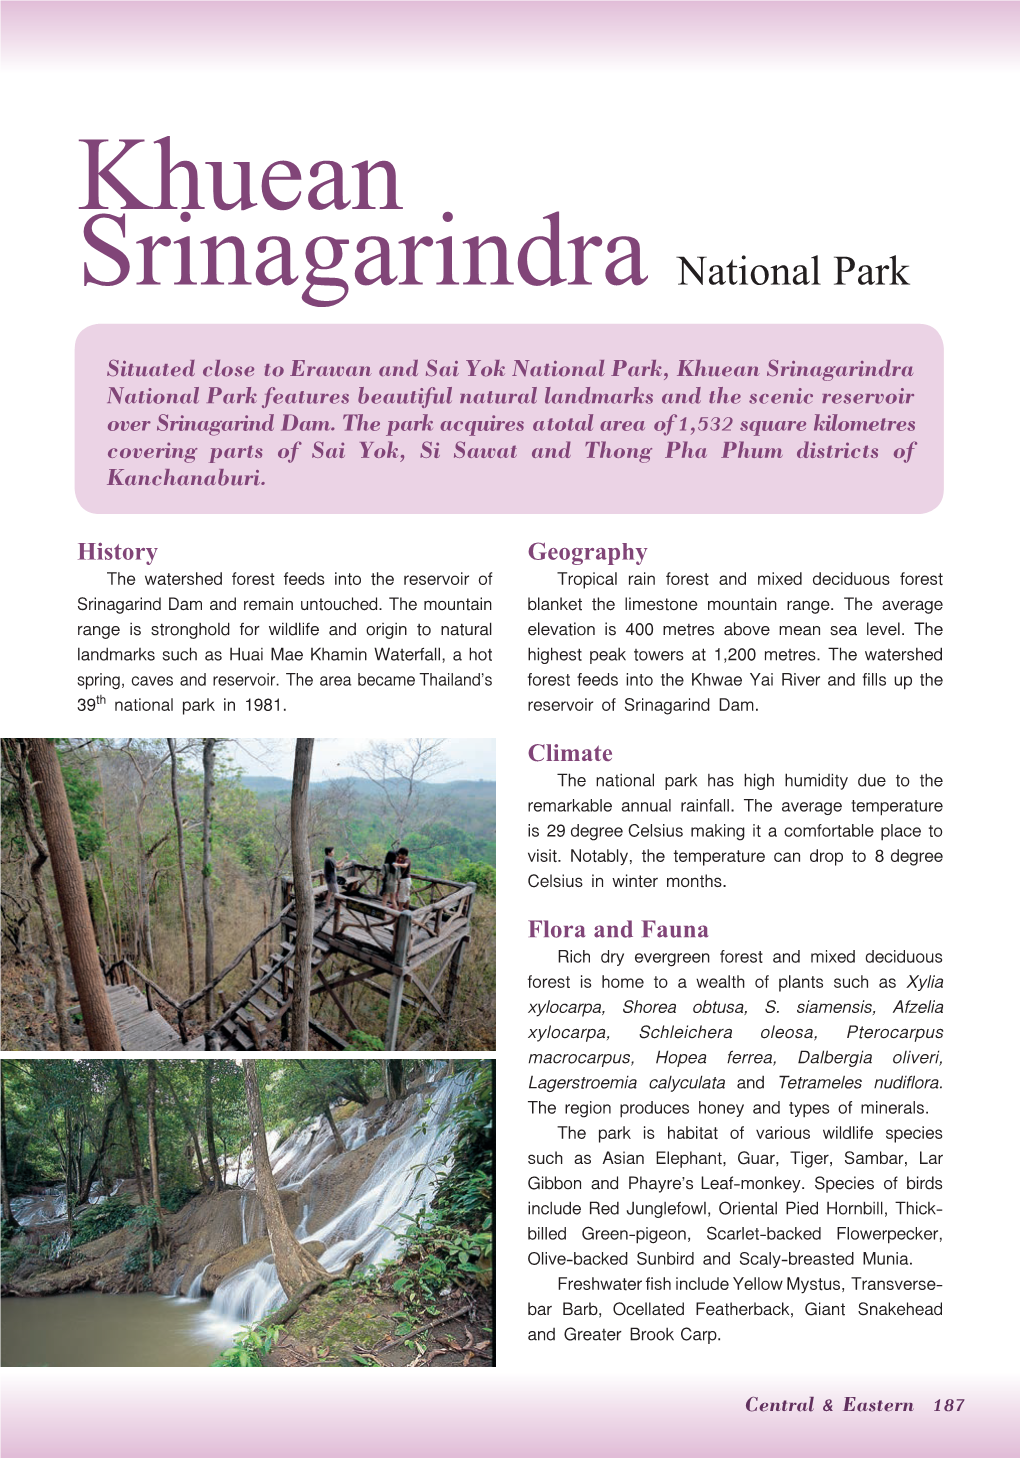 Khuean Srinagarindra National Park